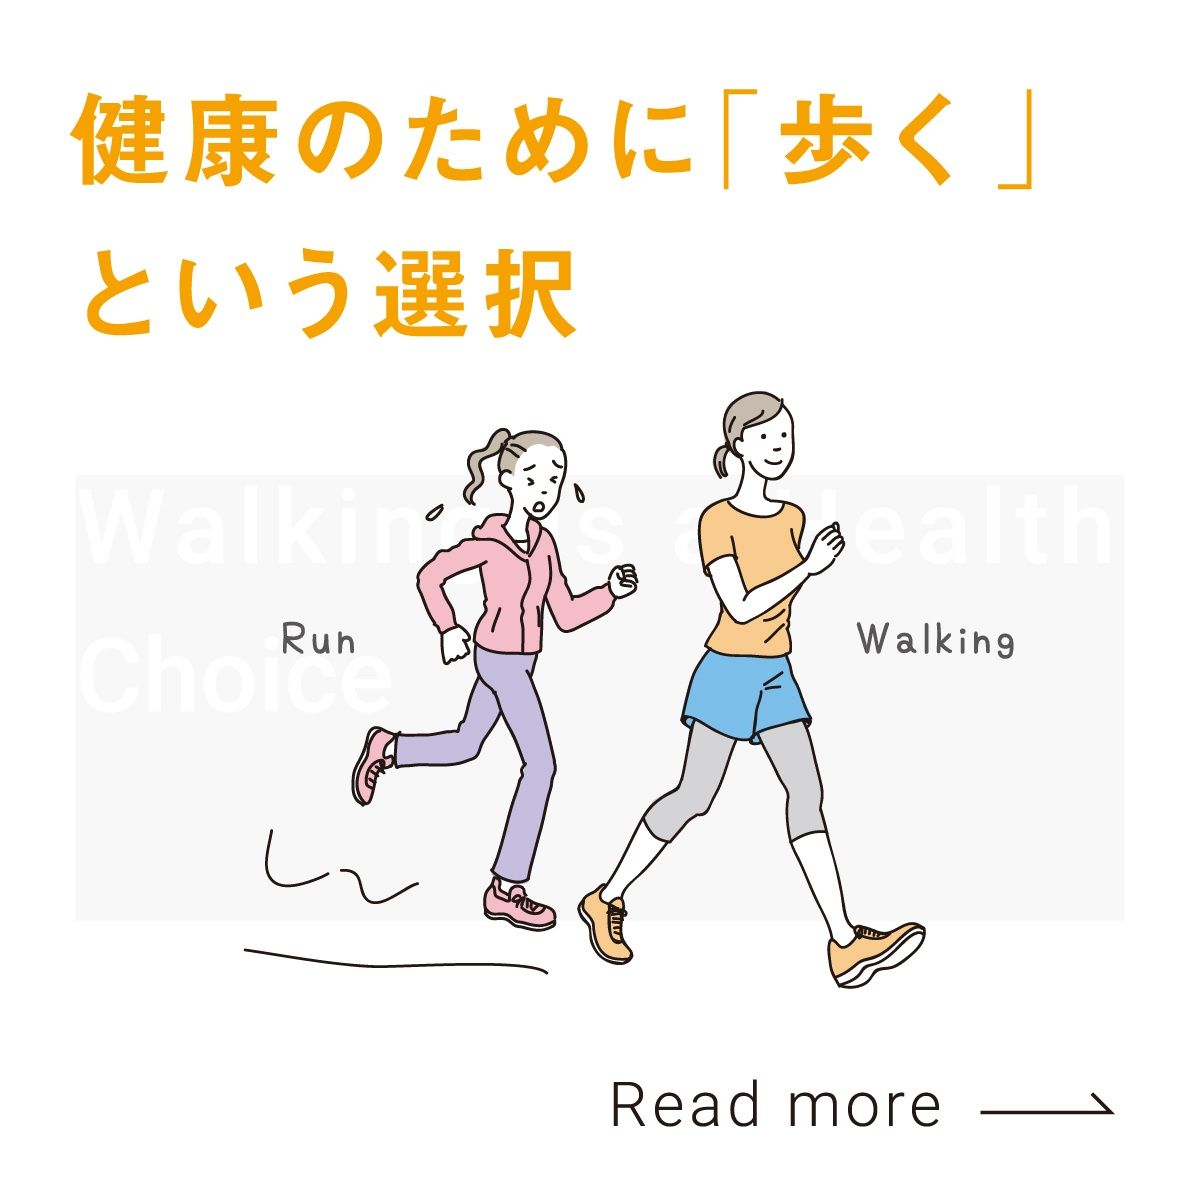 健康のために「歩く」という選択